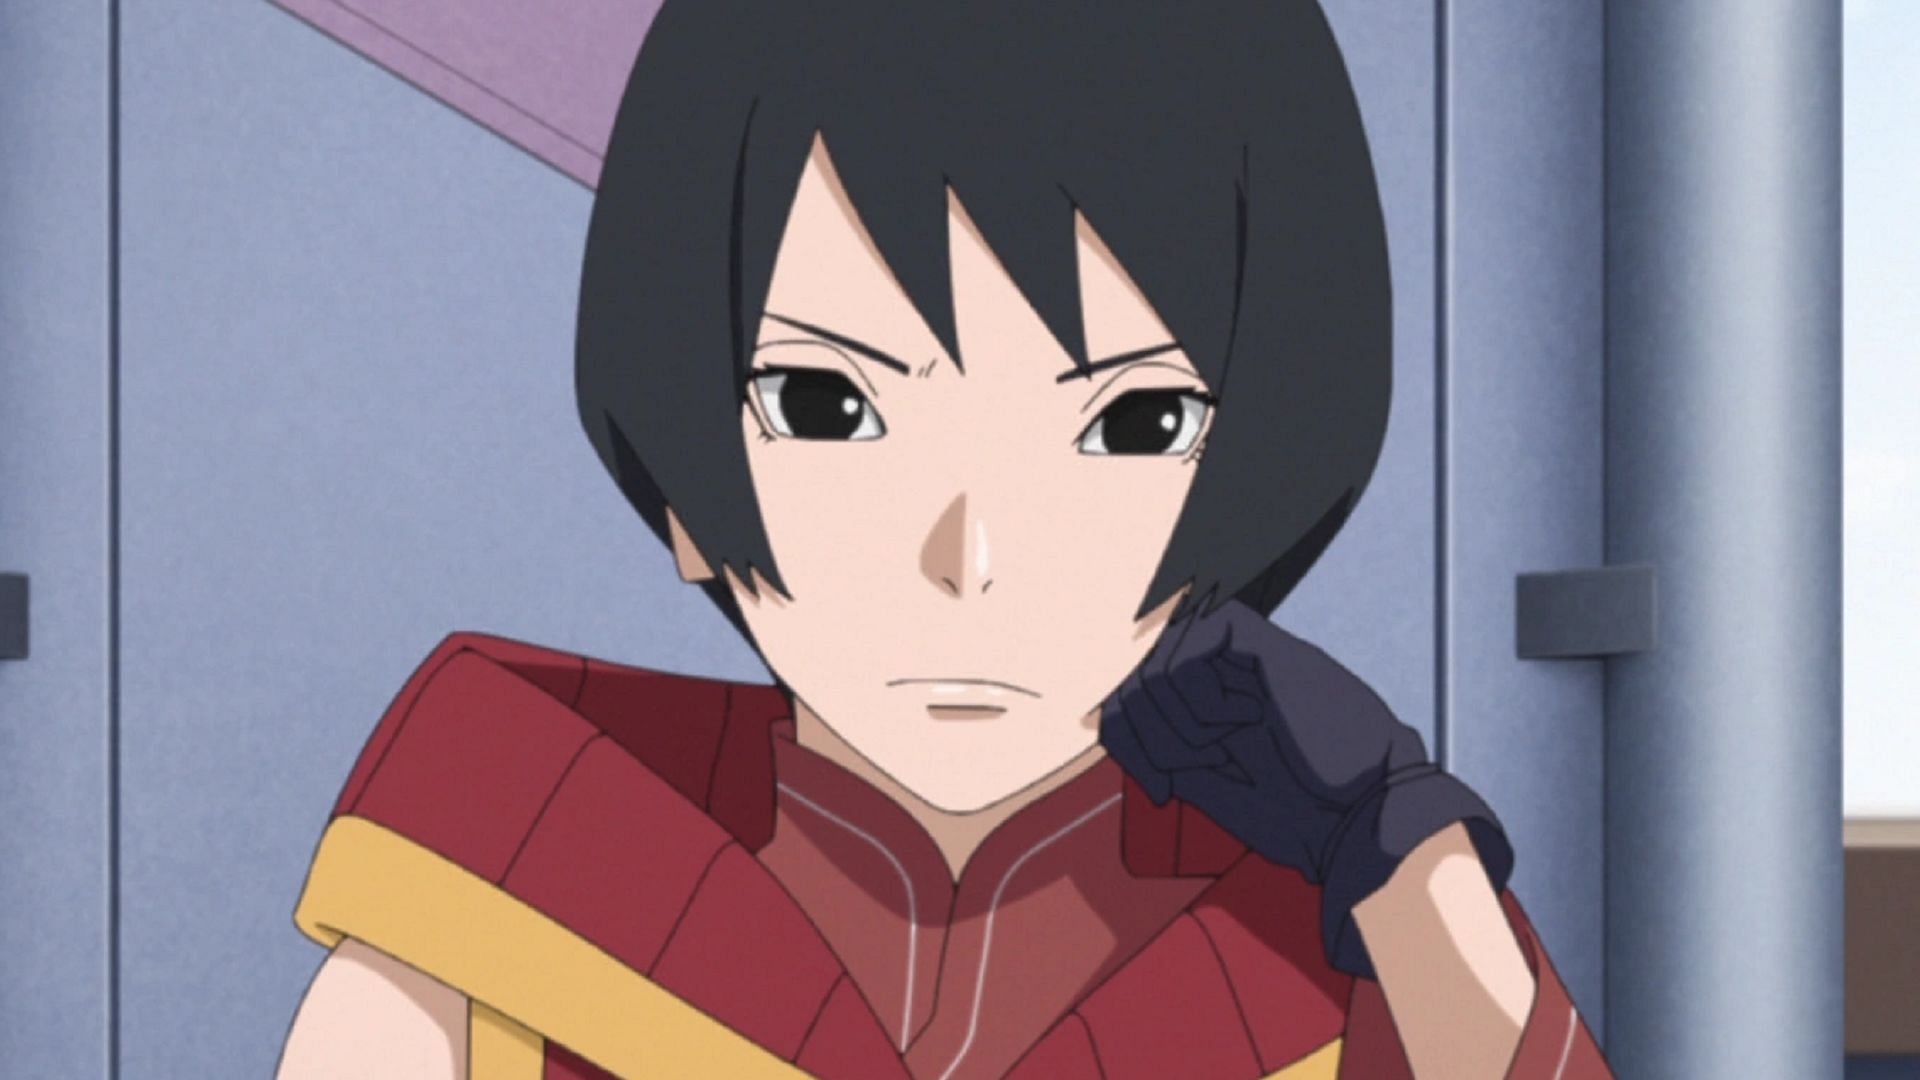 Kurotsuchi as seen in Naruto (Image via Studio Pierrot)